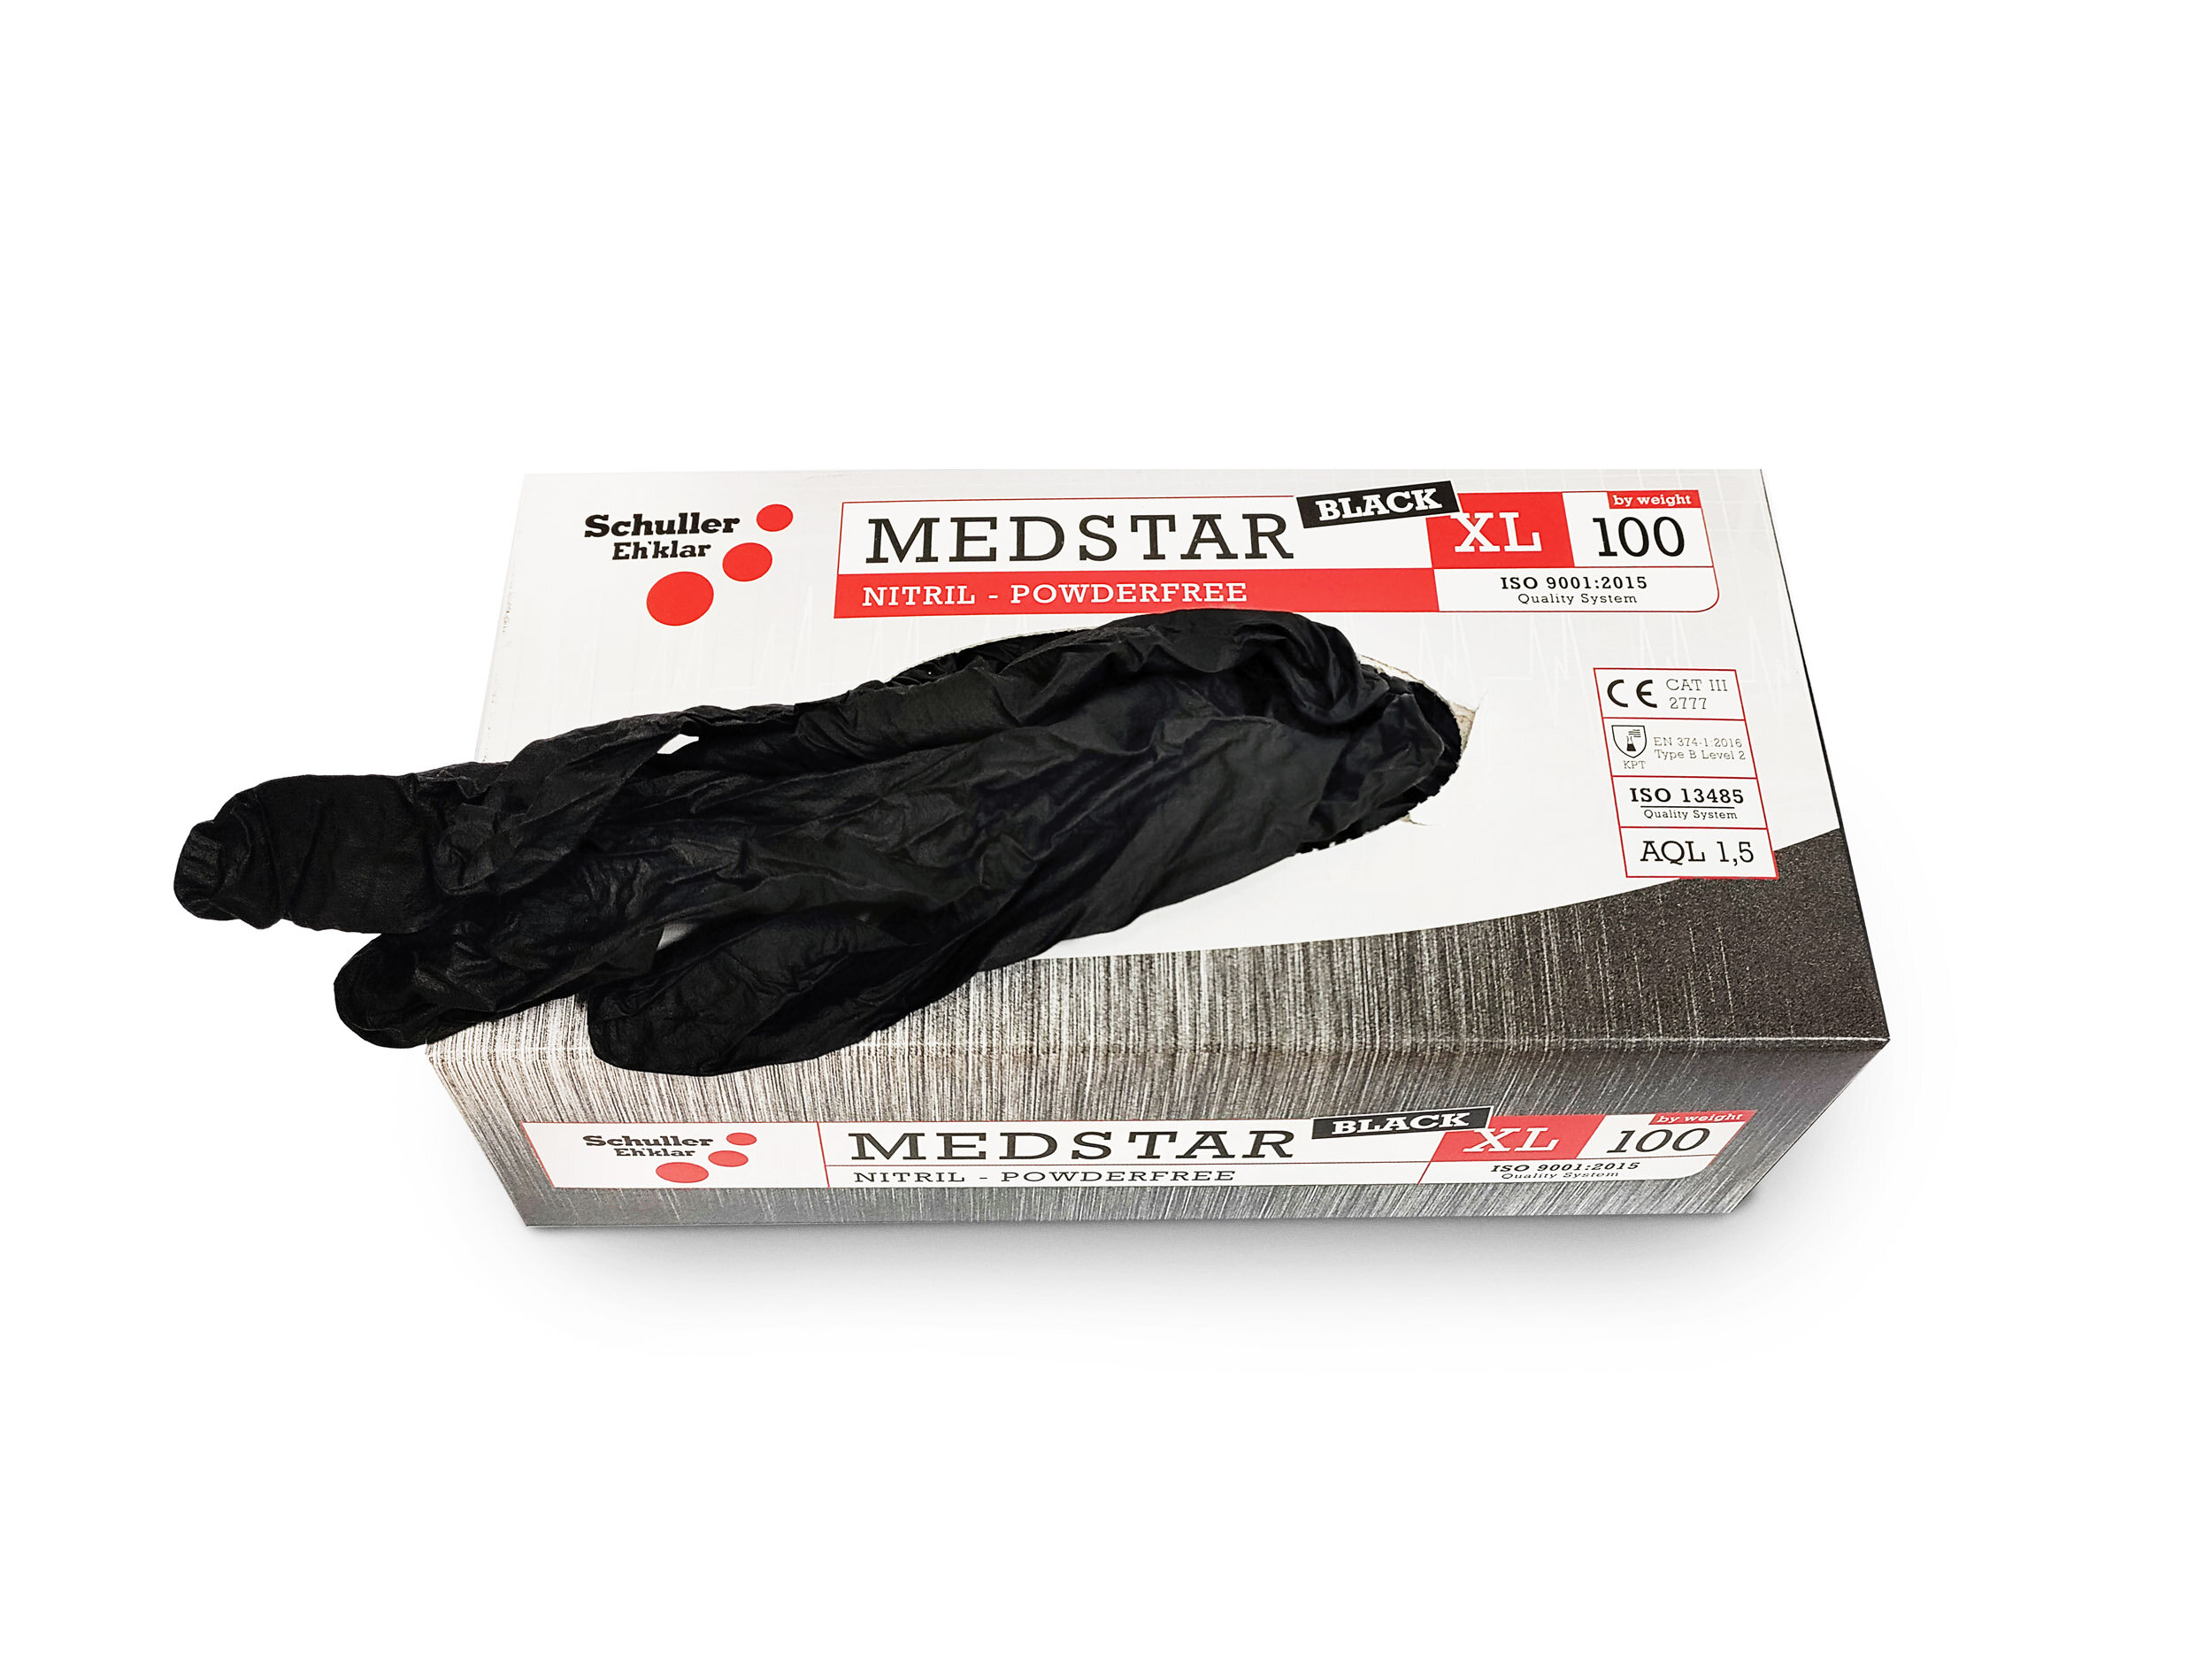 Medstar Black Handschuhe PF puderfrei   100 Stück